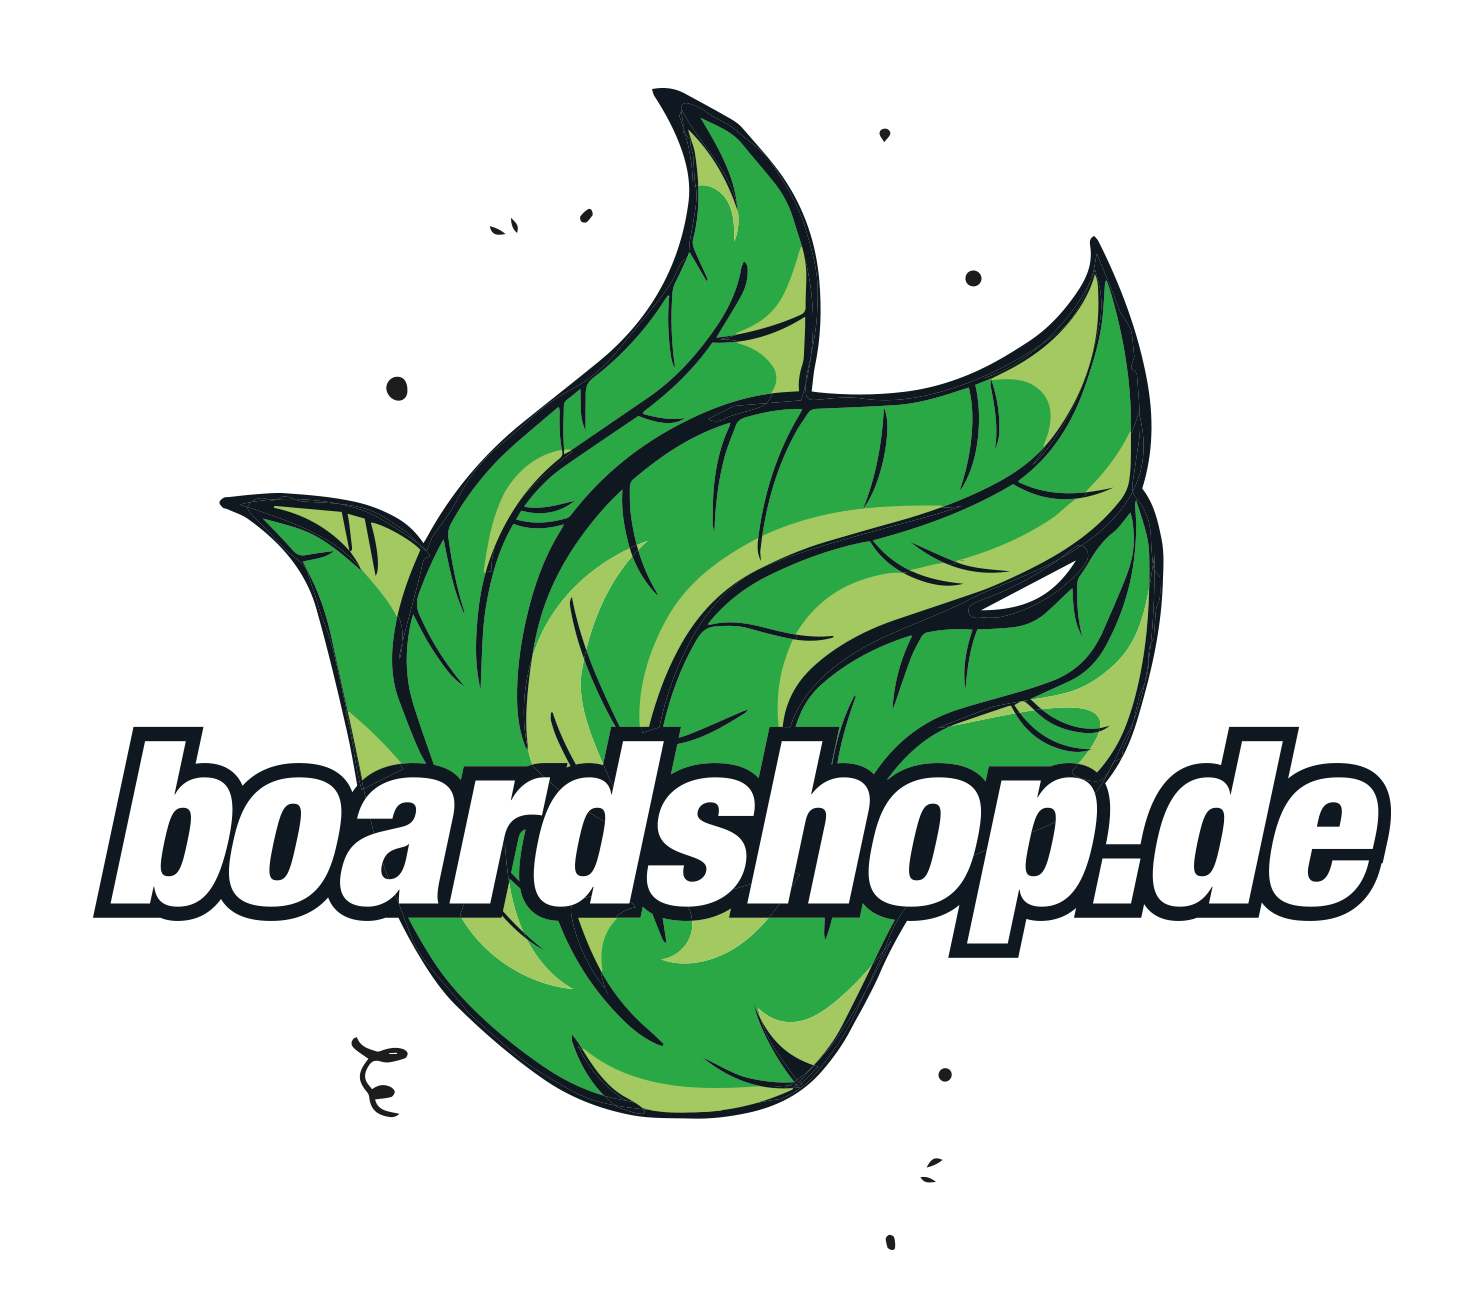 Chevron green Dein für Onlineshop Ragwear nachhaltige und Talin Mode - boardshop.de - Freiburg - | und Mode faire - Hose Hosen dusty Snowboards Skateboards, Boardshop